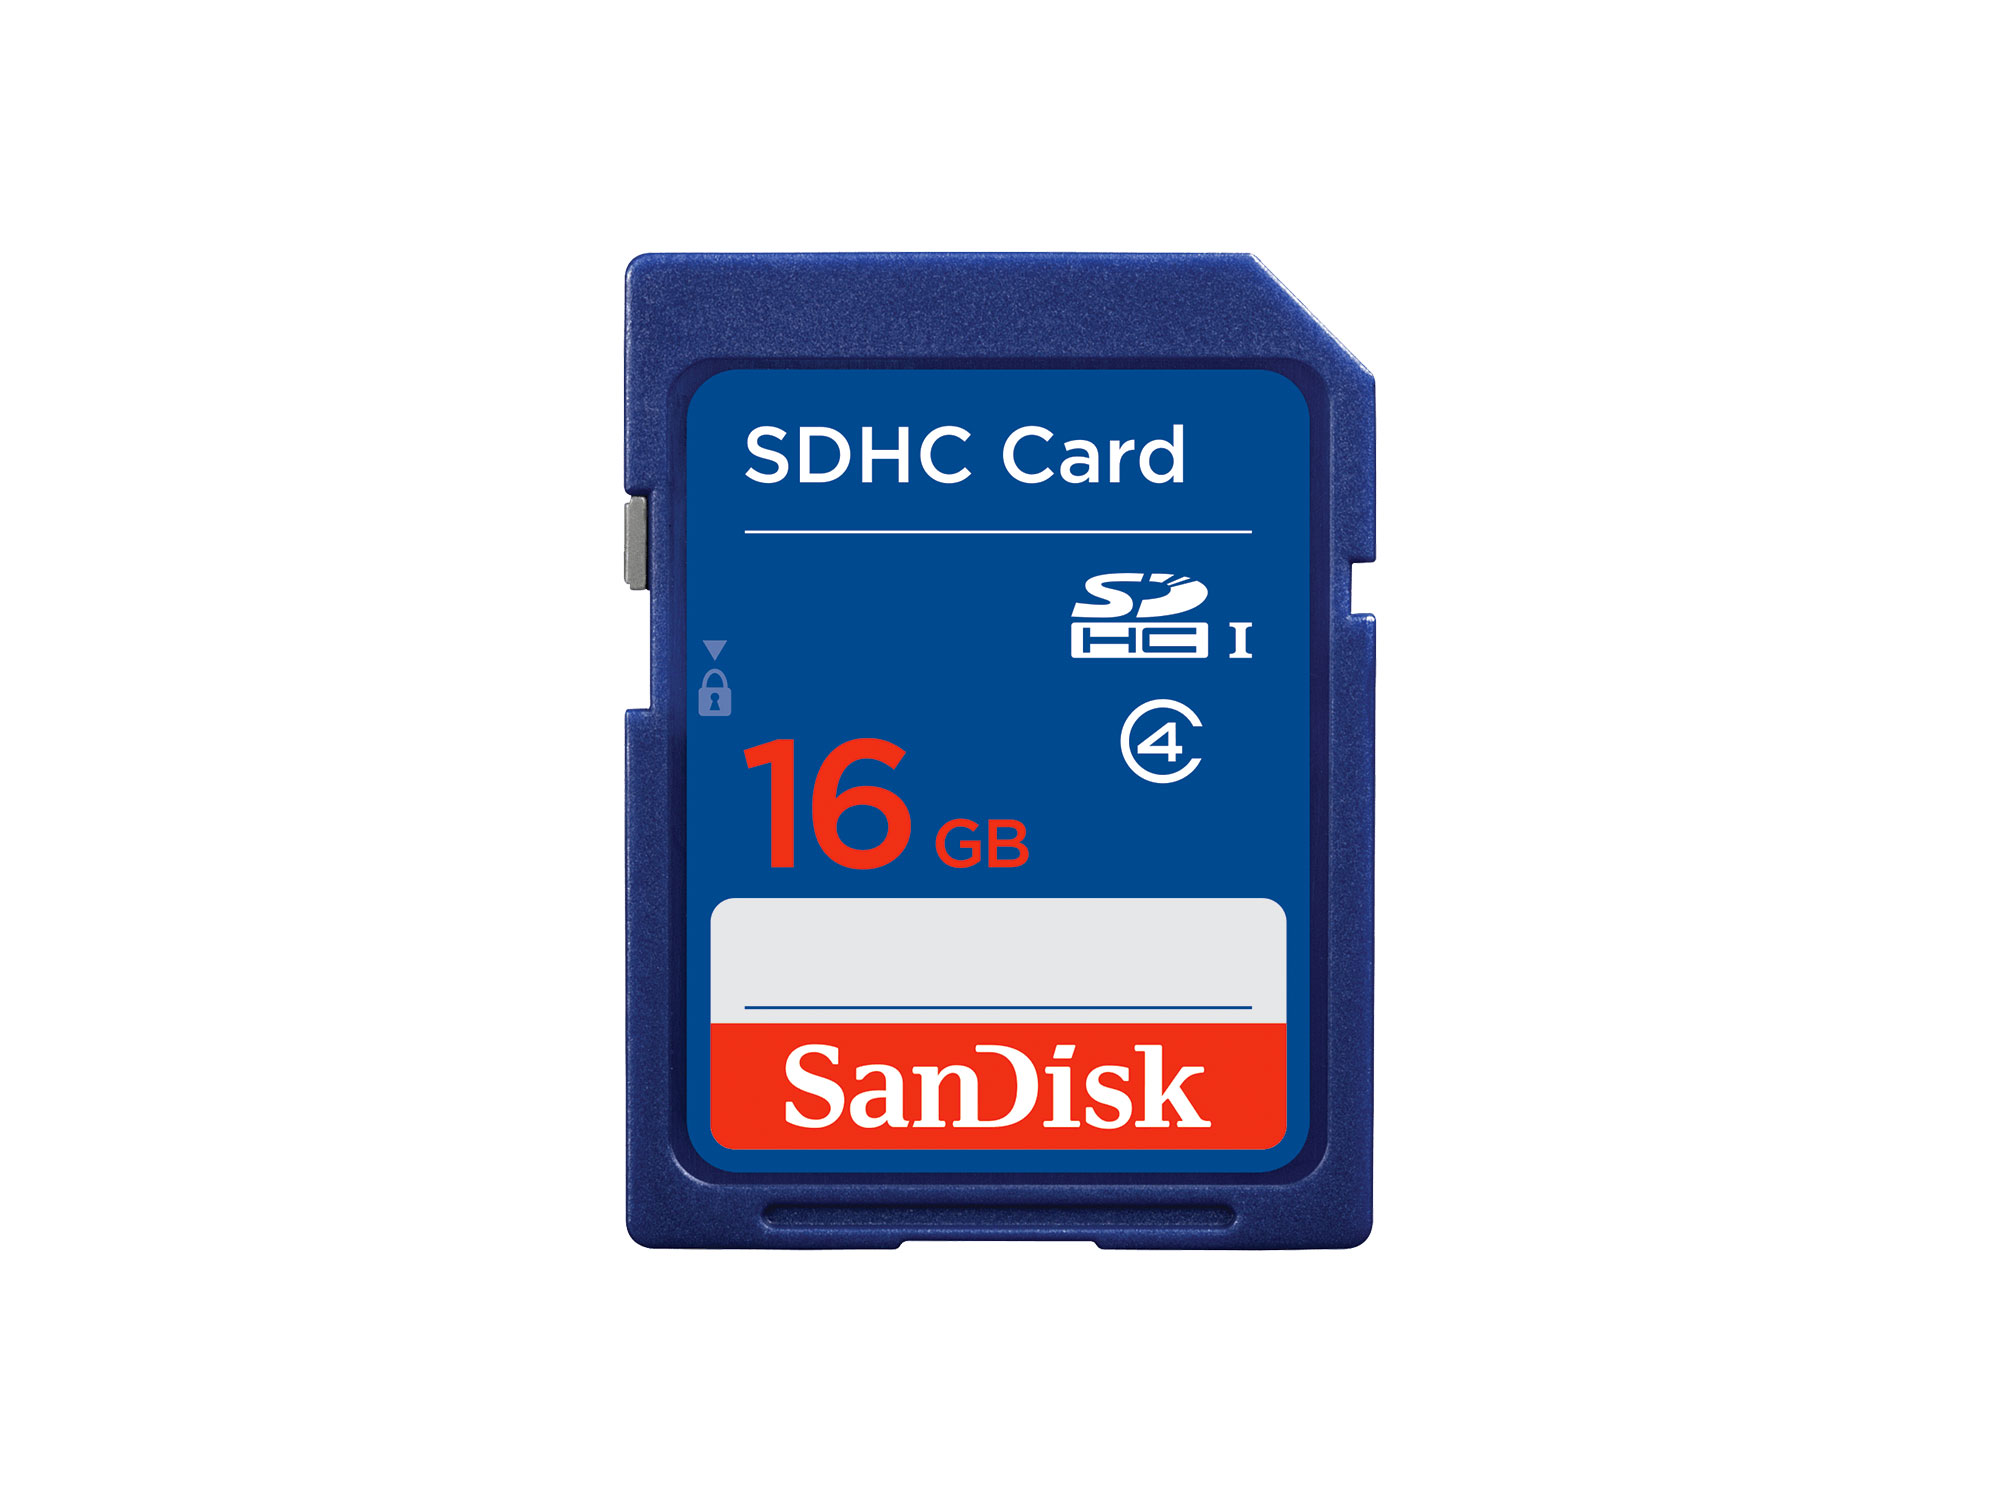 16 GB SD card